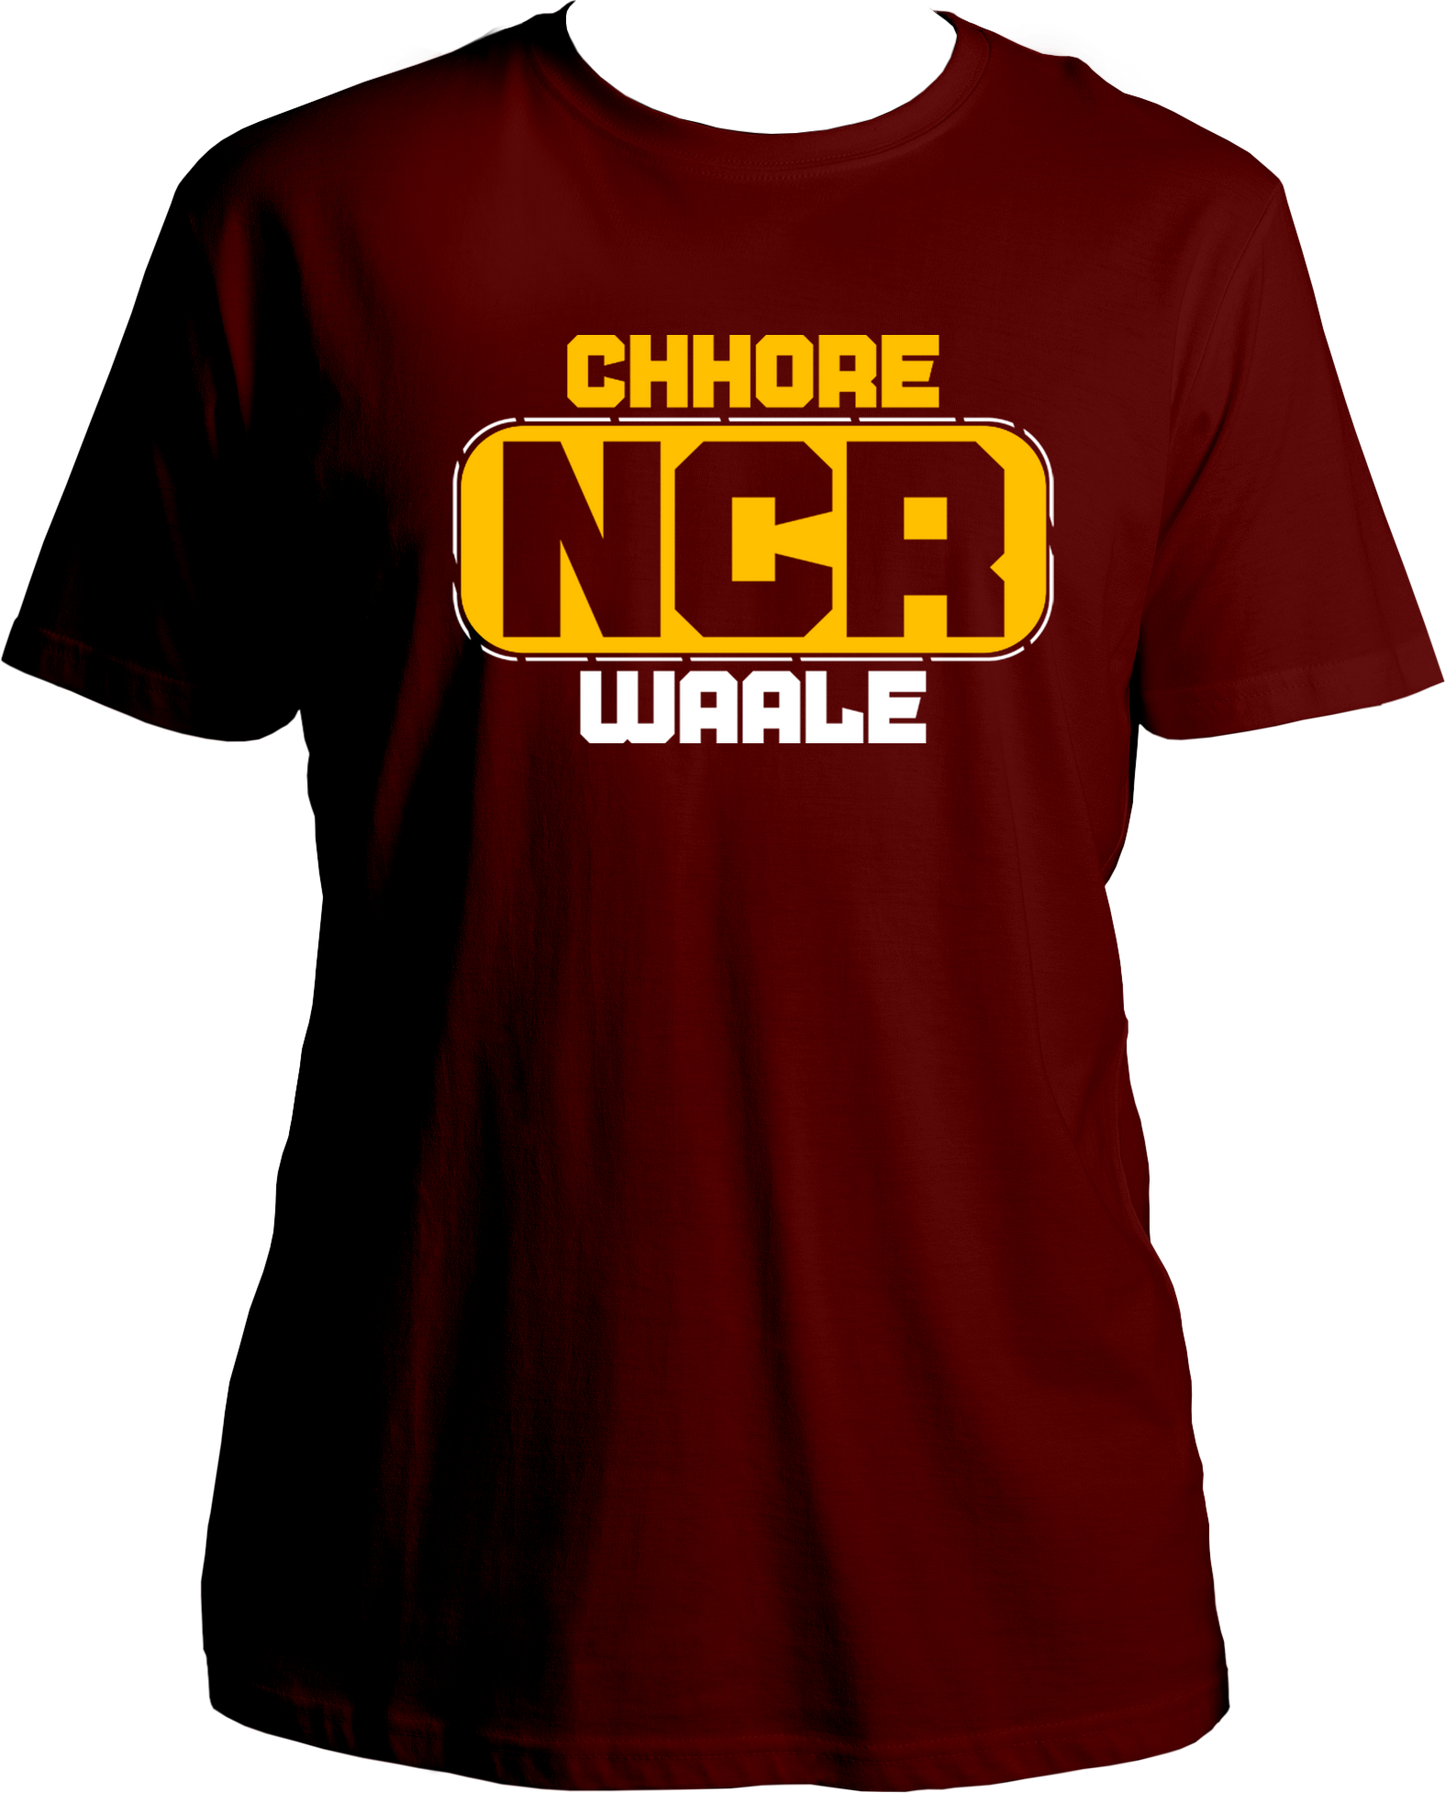 Chhore NCR Waale Unisex T-Shirts